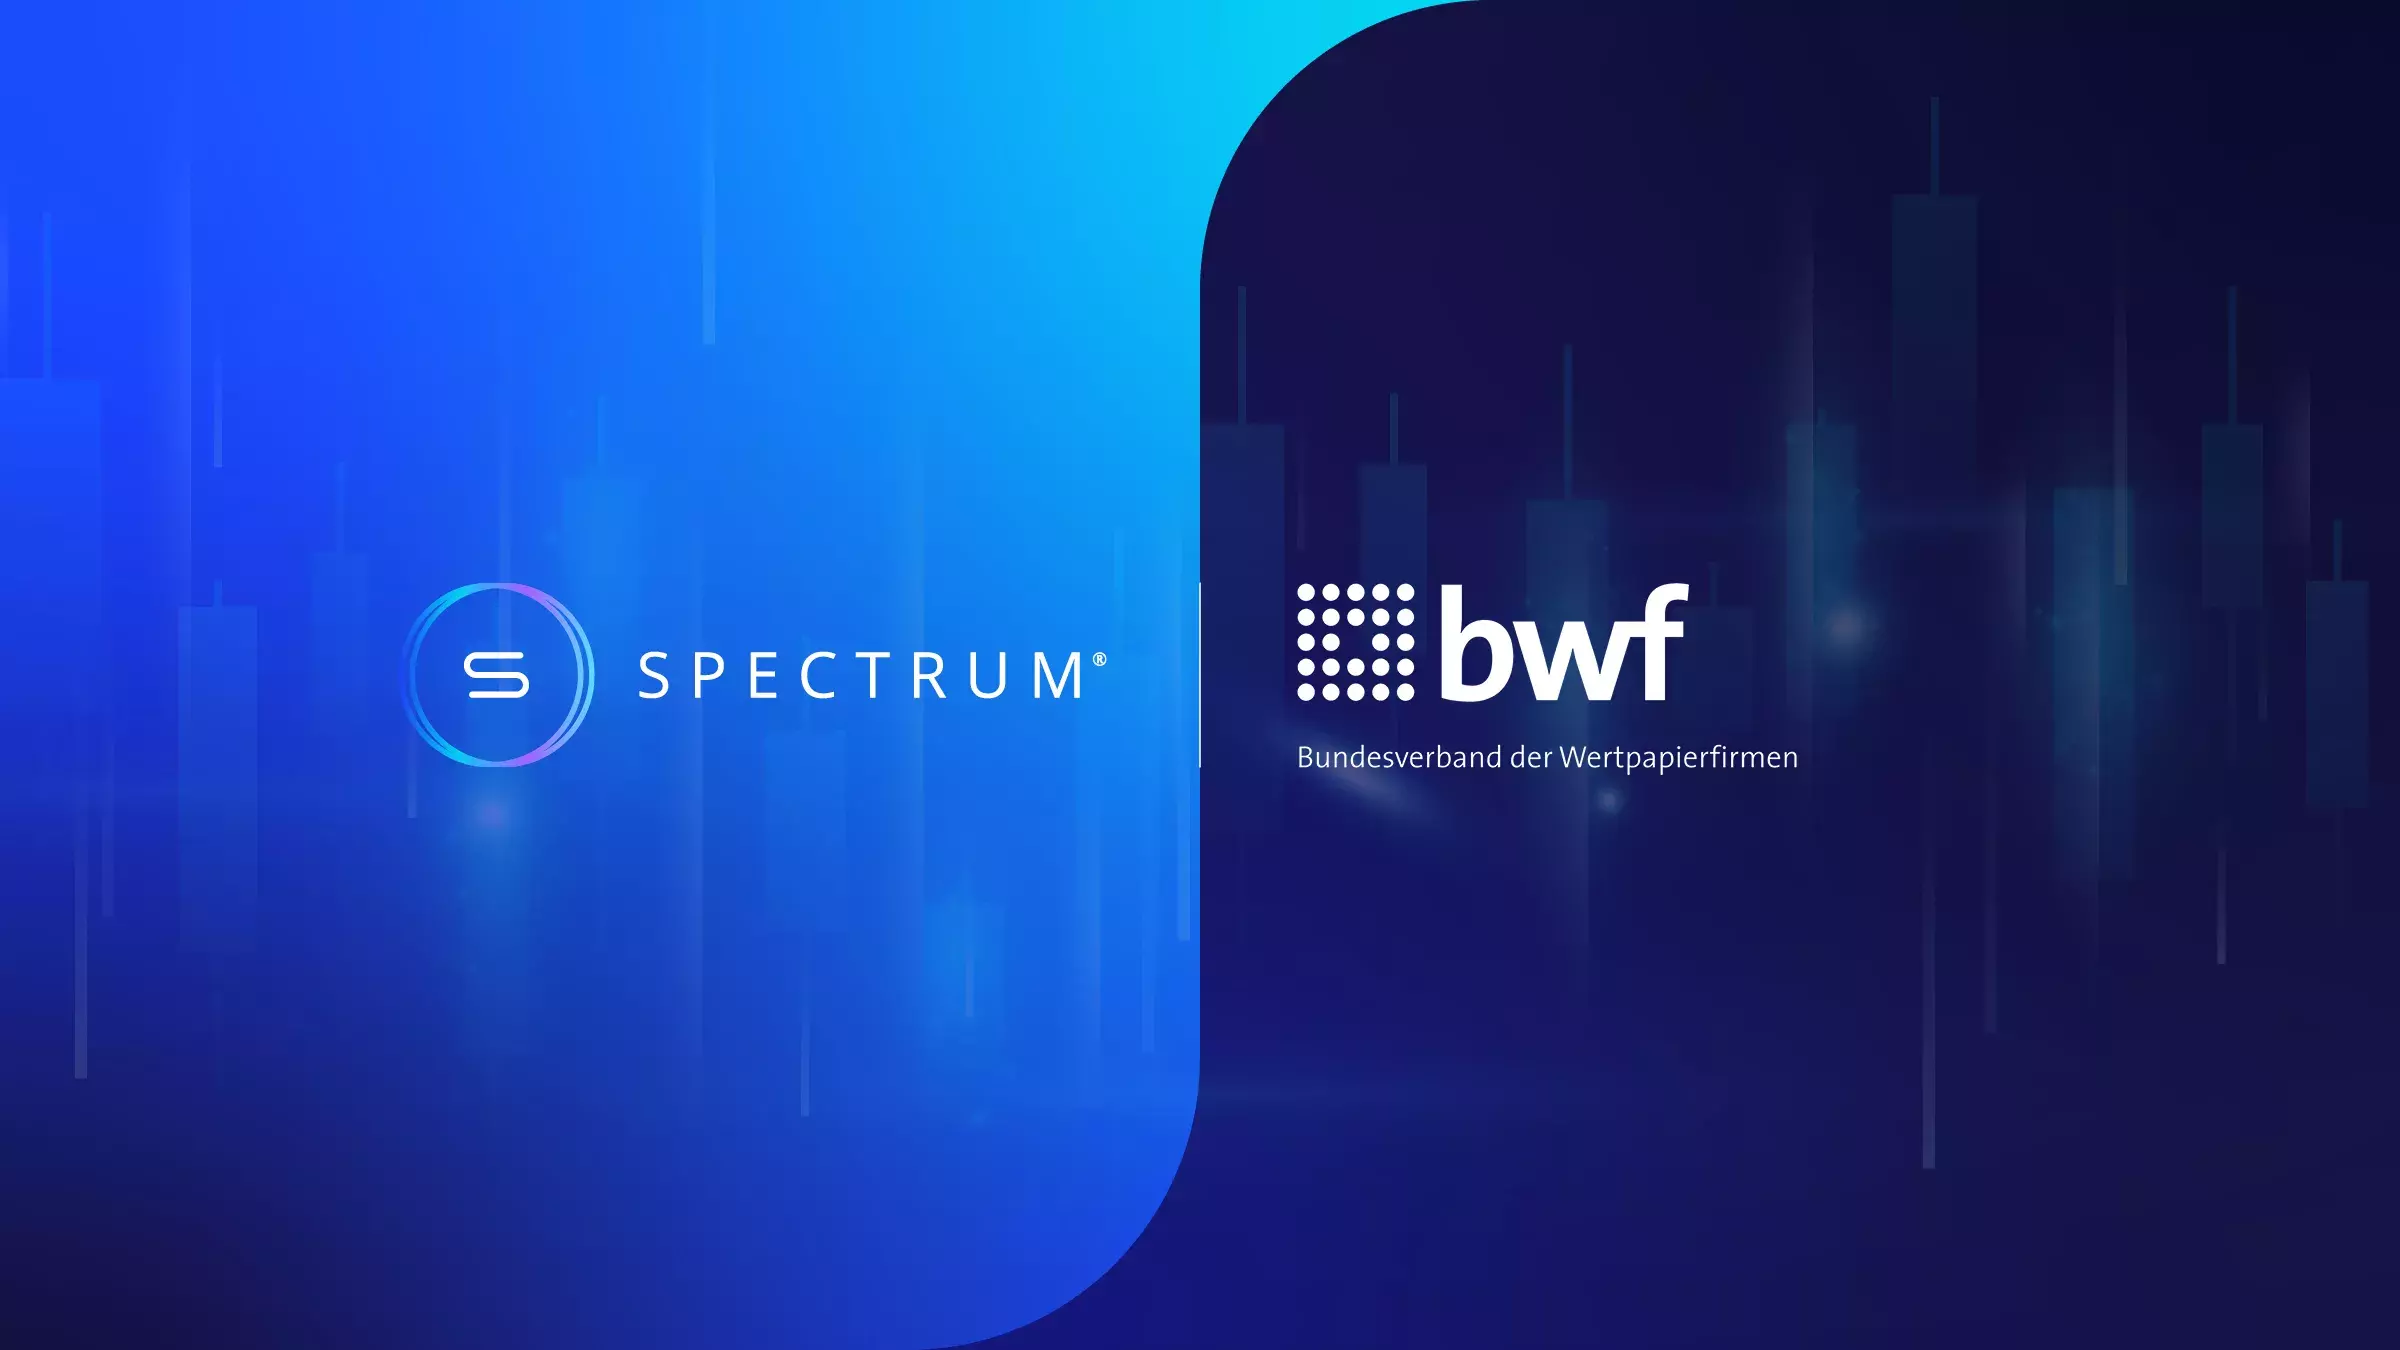 Spectrum | bwf